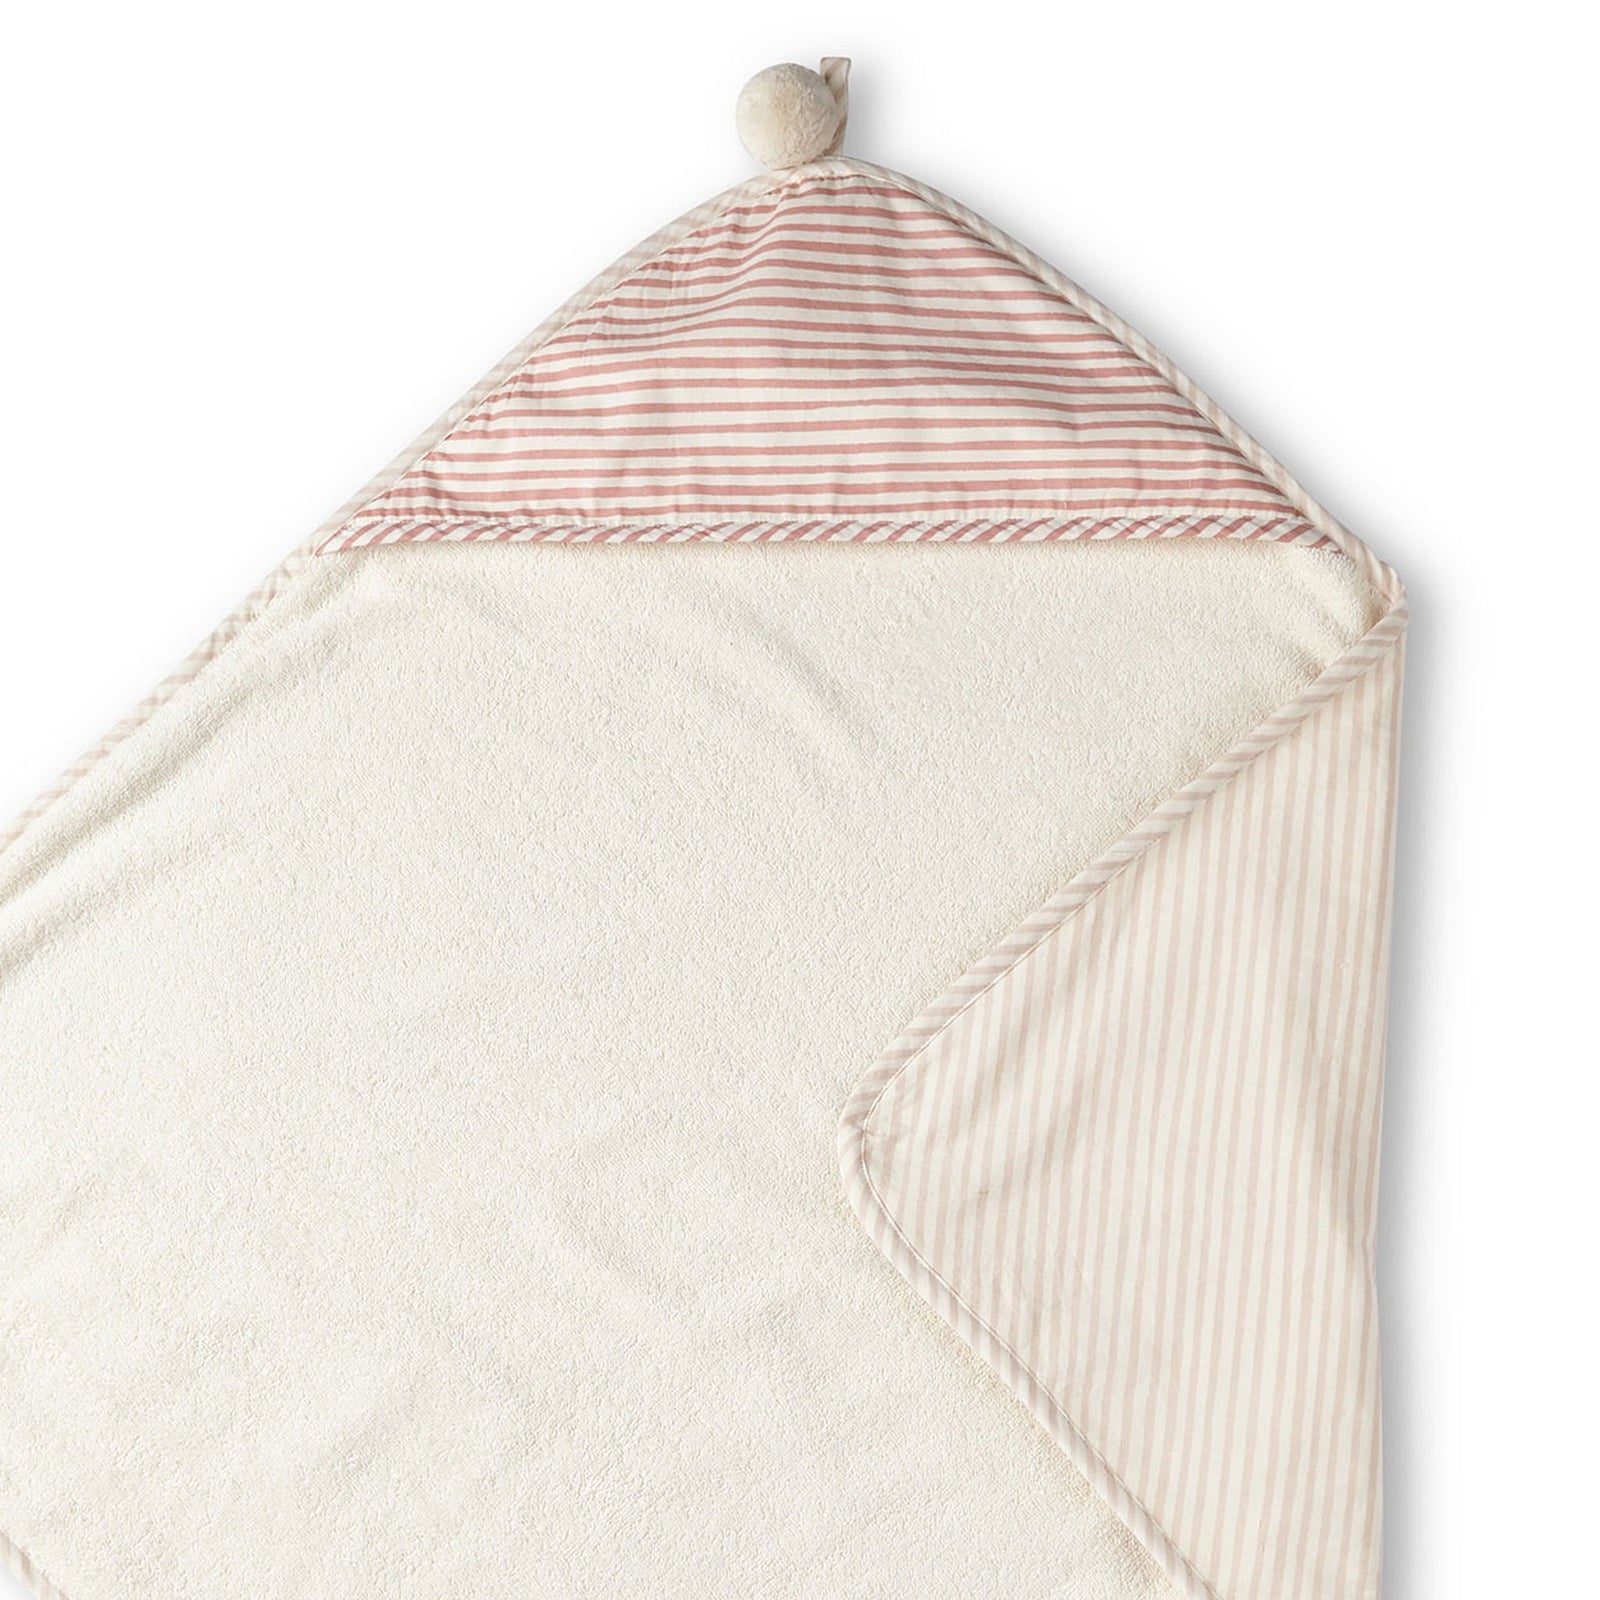 Striped Hooded Towel Hooded Towel Pehr Stripes Away Petal  